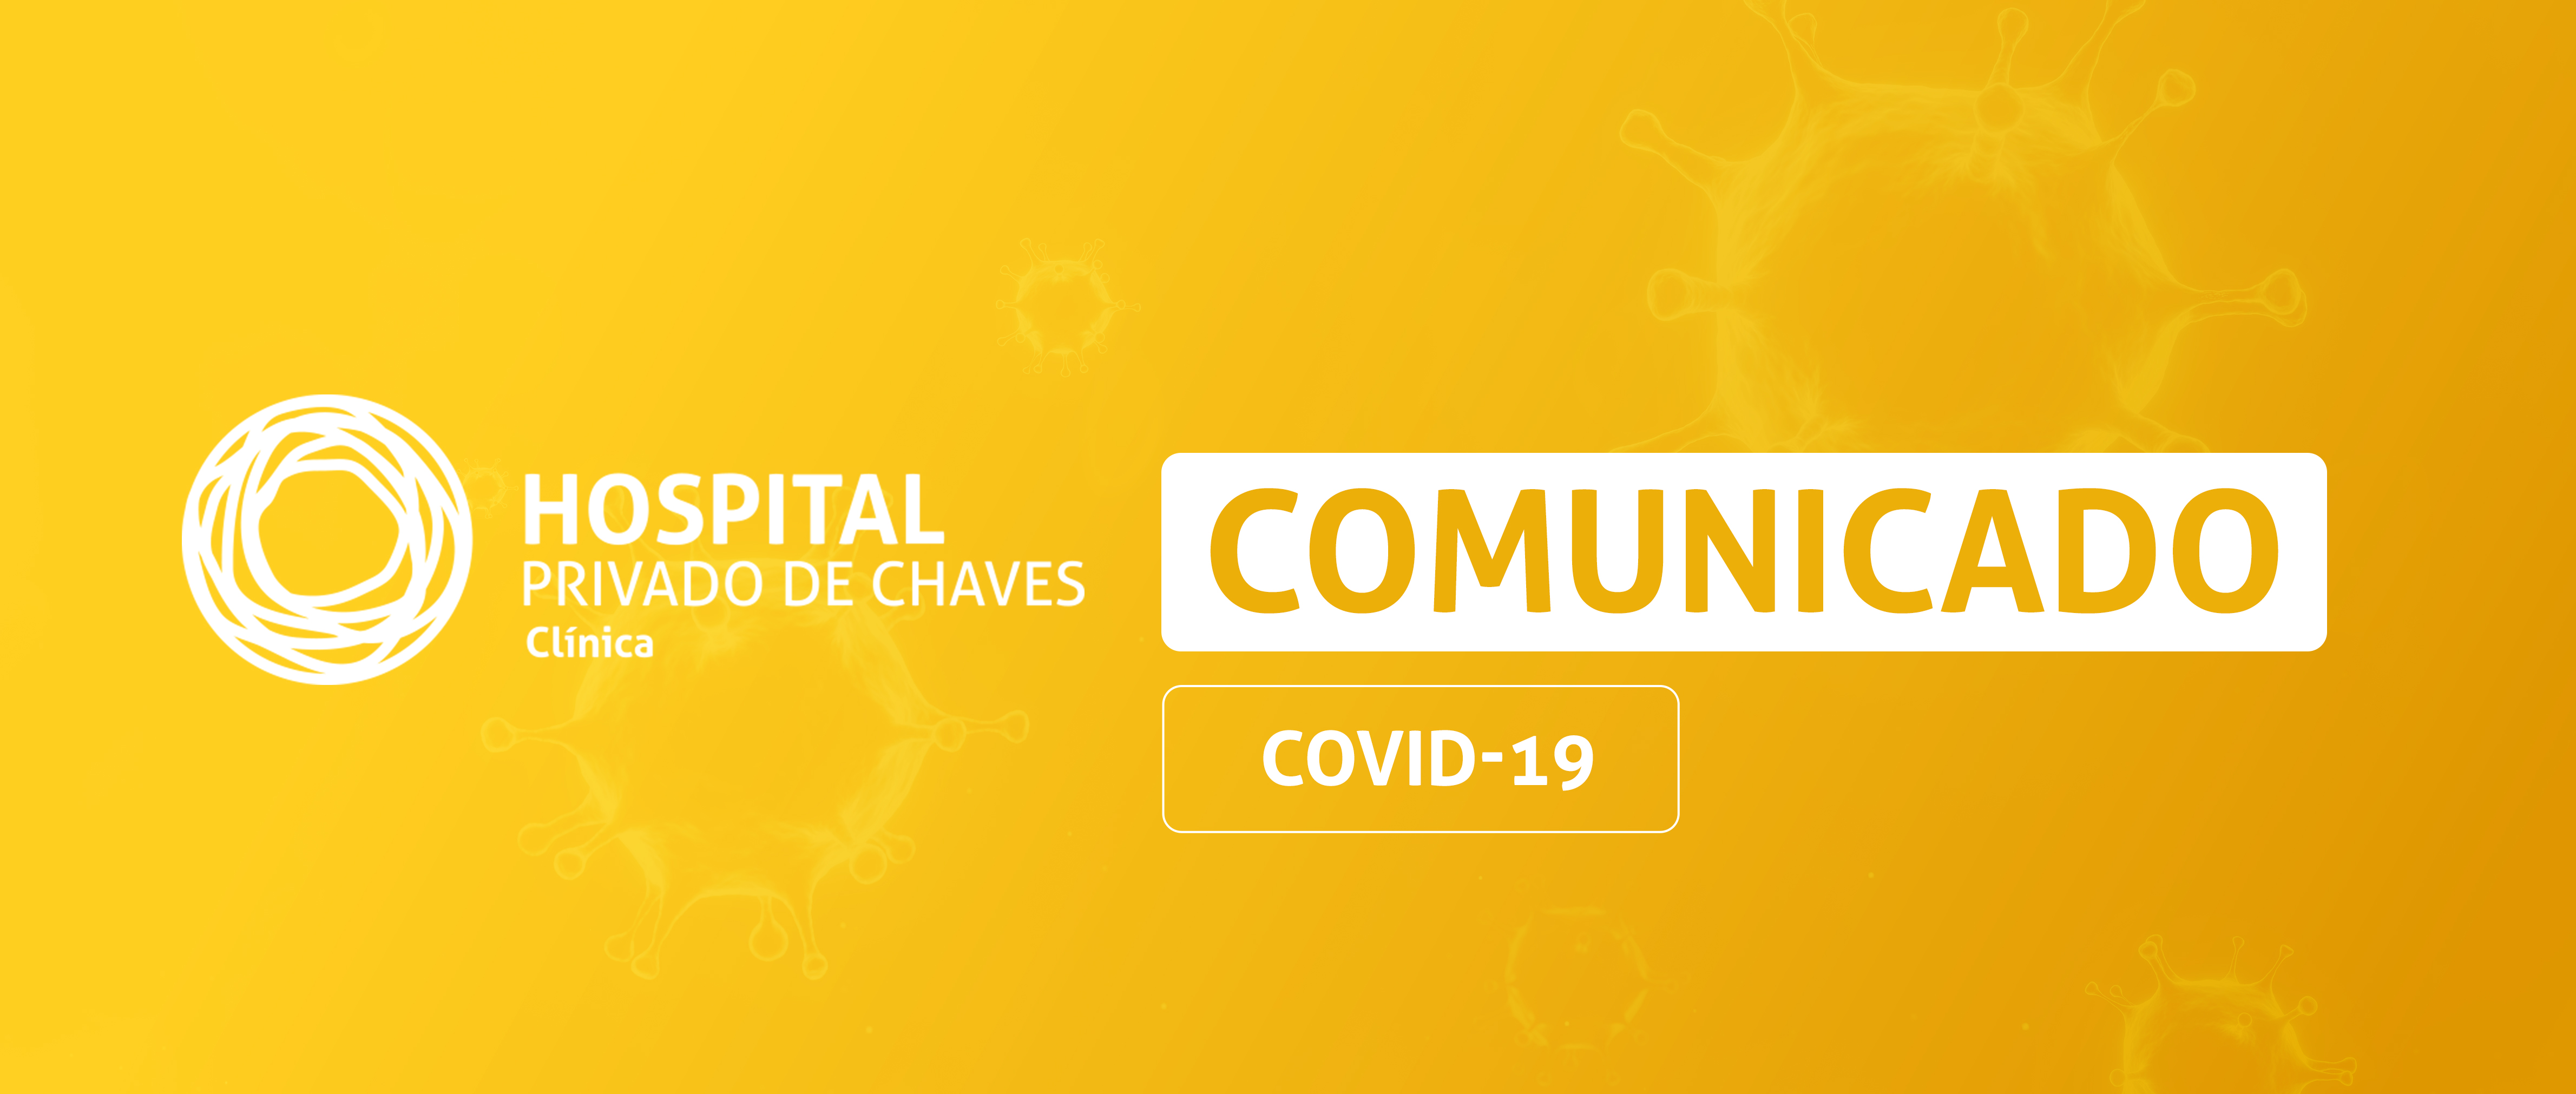 COMUNICADO | COVID-19